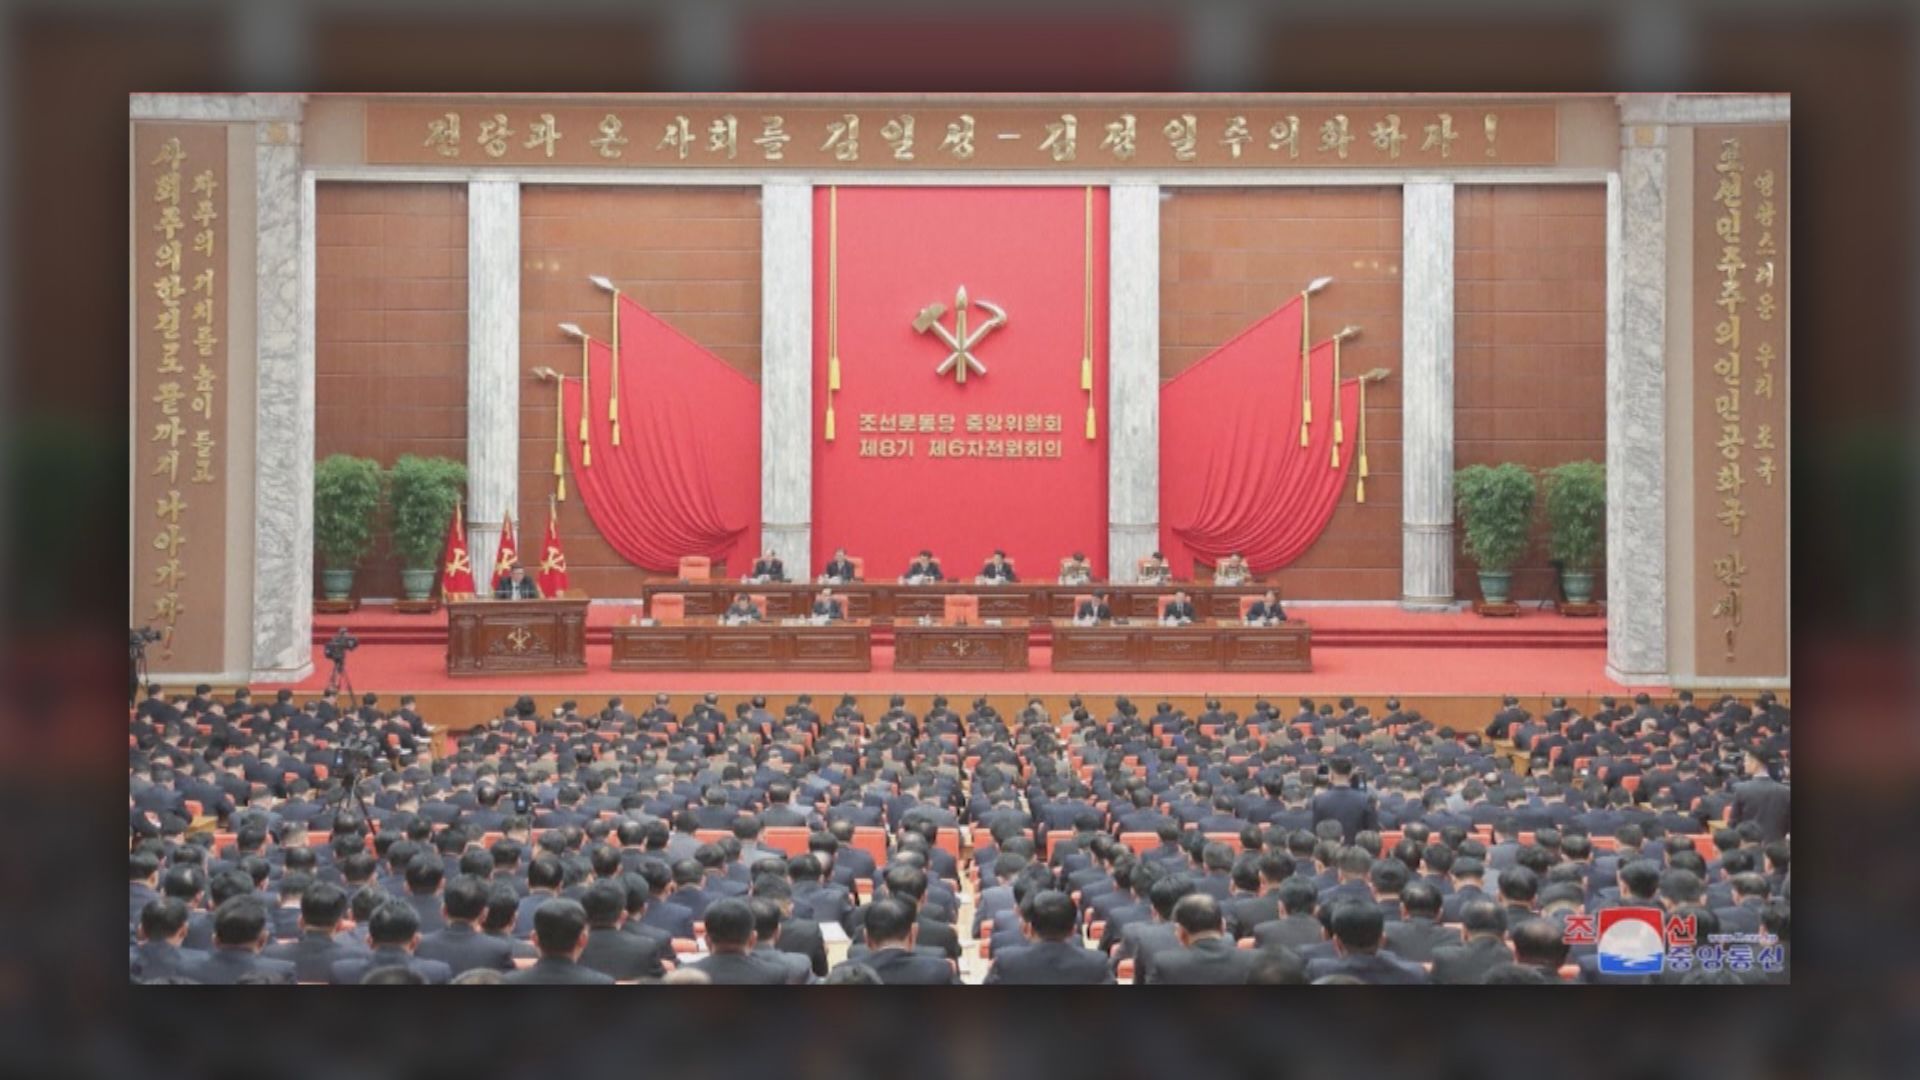 金正恩提出明年旨在加強軍力的核心目標　尹錫悅稱要反擊北韓挑釁行為